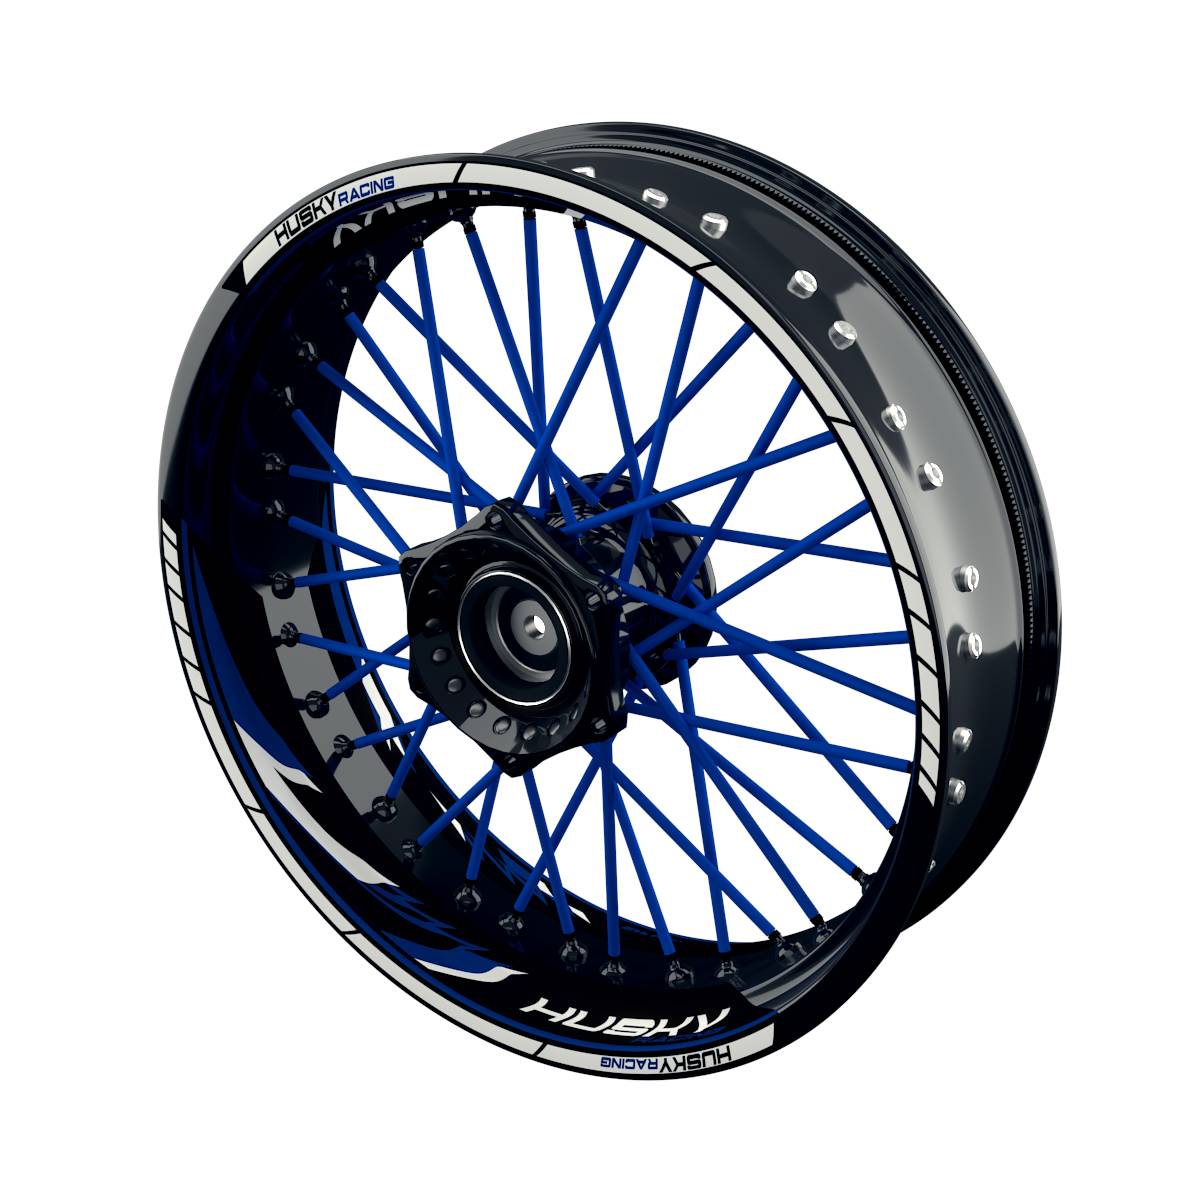 HUSKY Racing Razor Rim Decals Wheelsticker Premium splitted